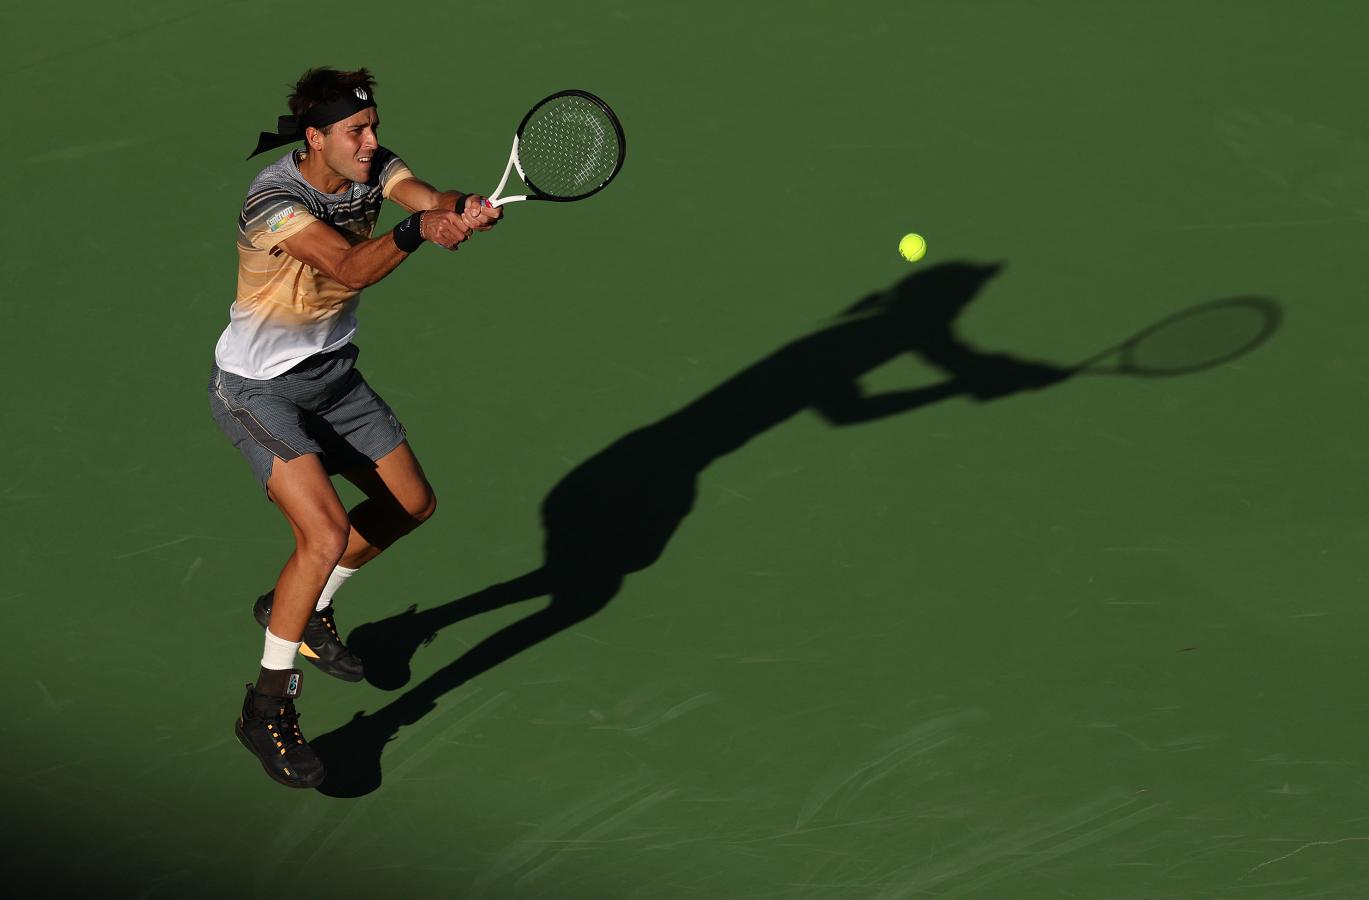 Imagen Etcheverry tuvo una de sus primeras grandes apariciones en el circuito frente a Murray en Indian Wells. Foto: AFP